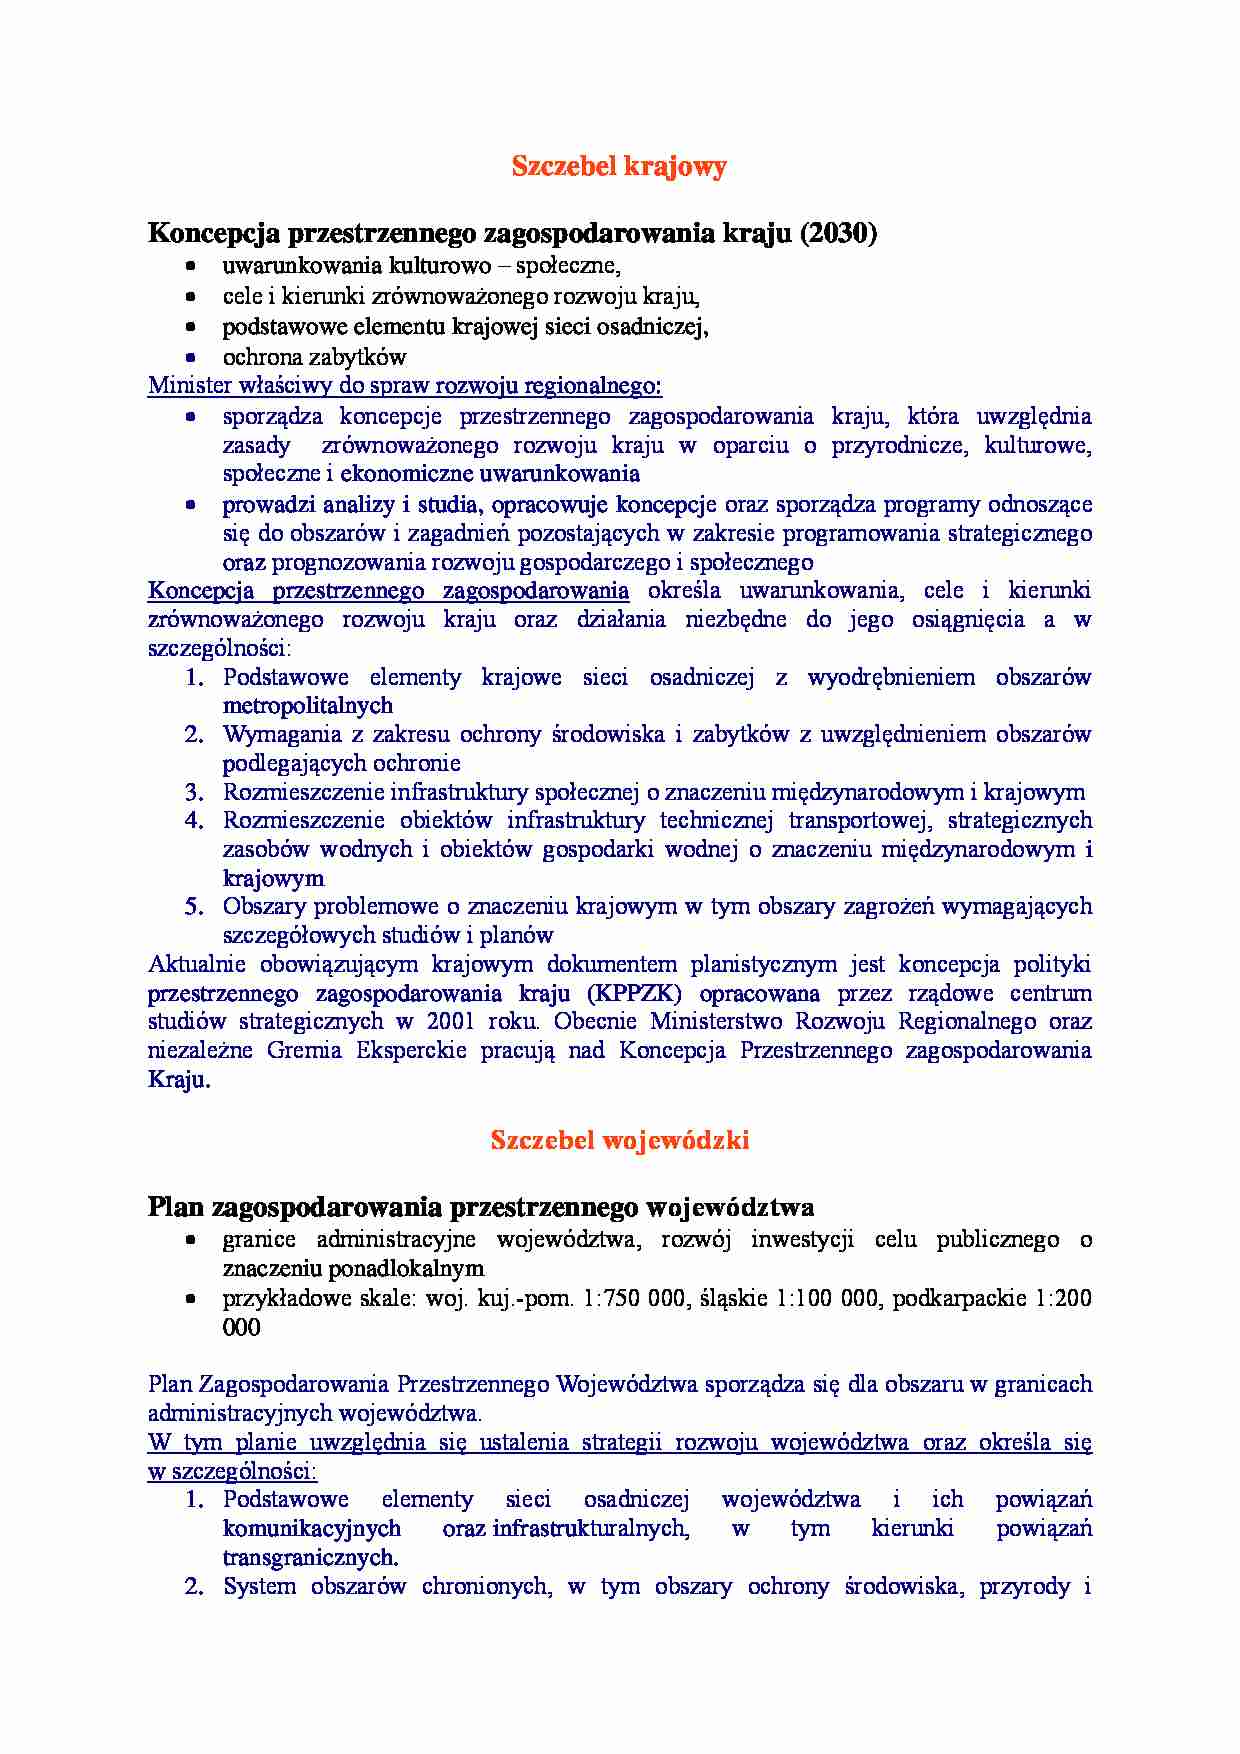 Szczebel krajowy i wojewódzki-opracowanie - strona 1